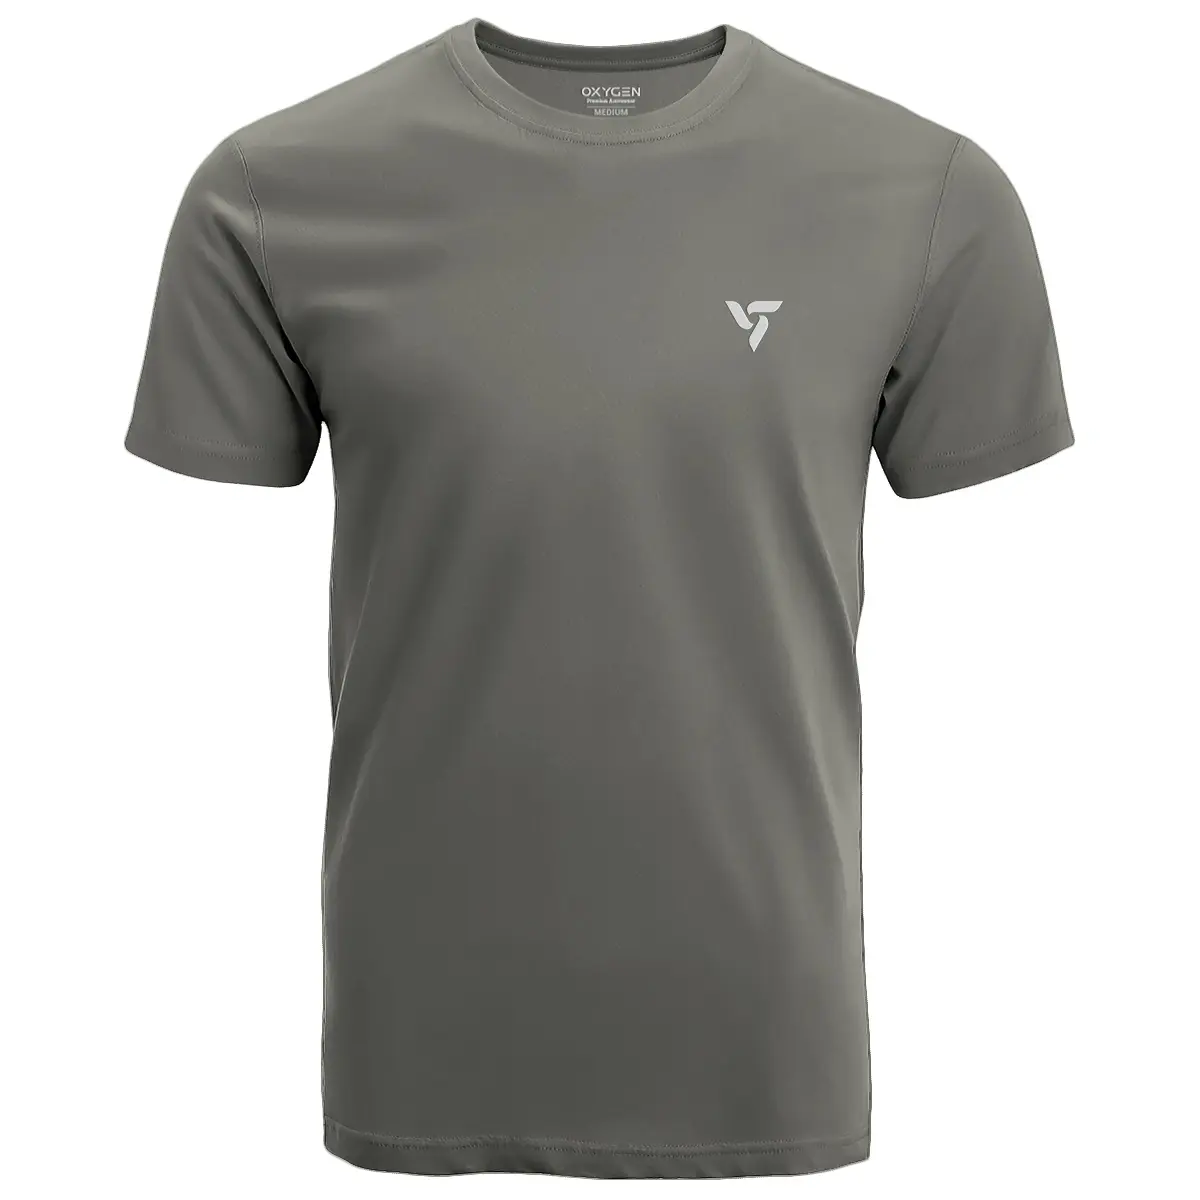 Steel Grey Sports T-Shirt | Men's Activewear & Sportswear